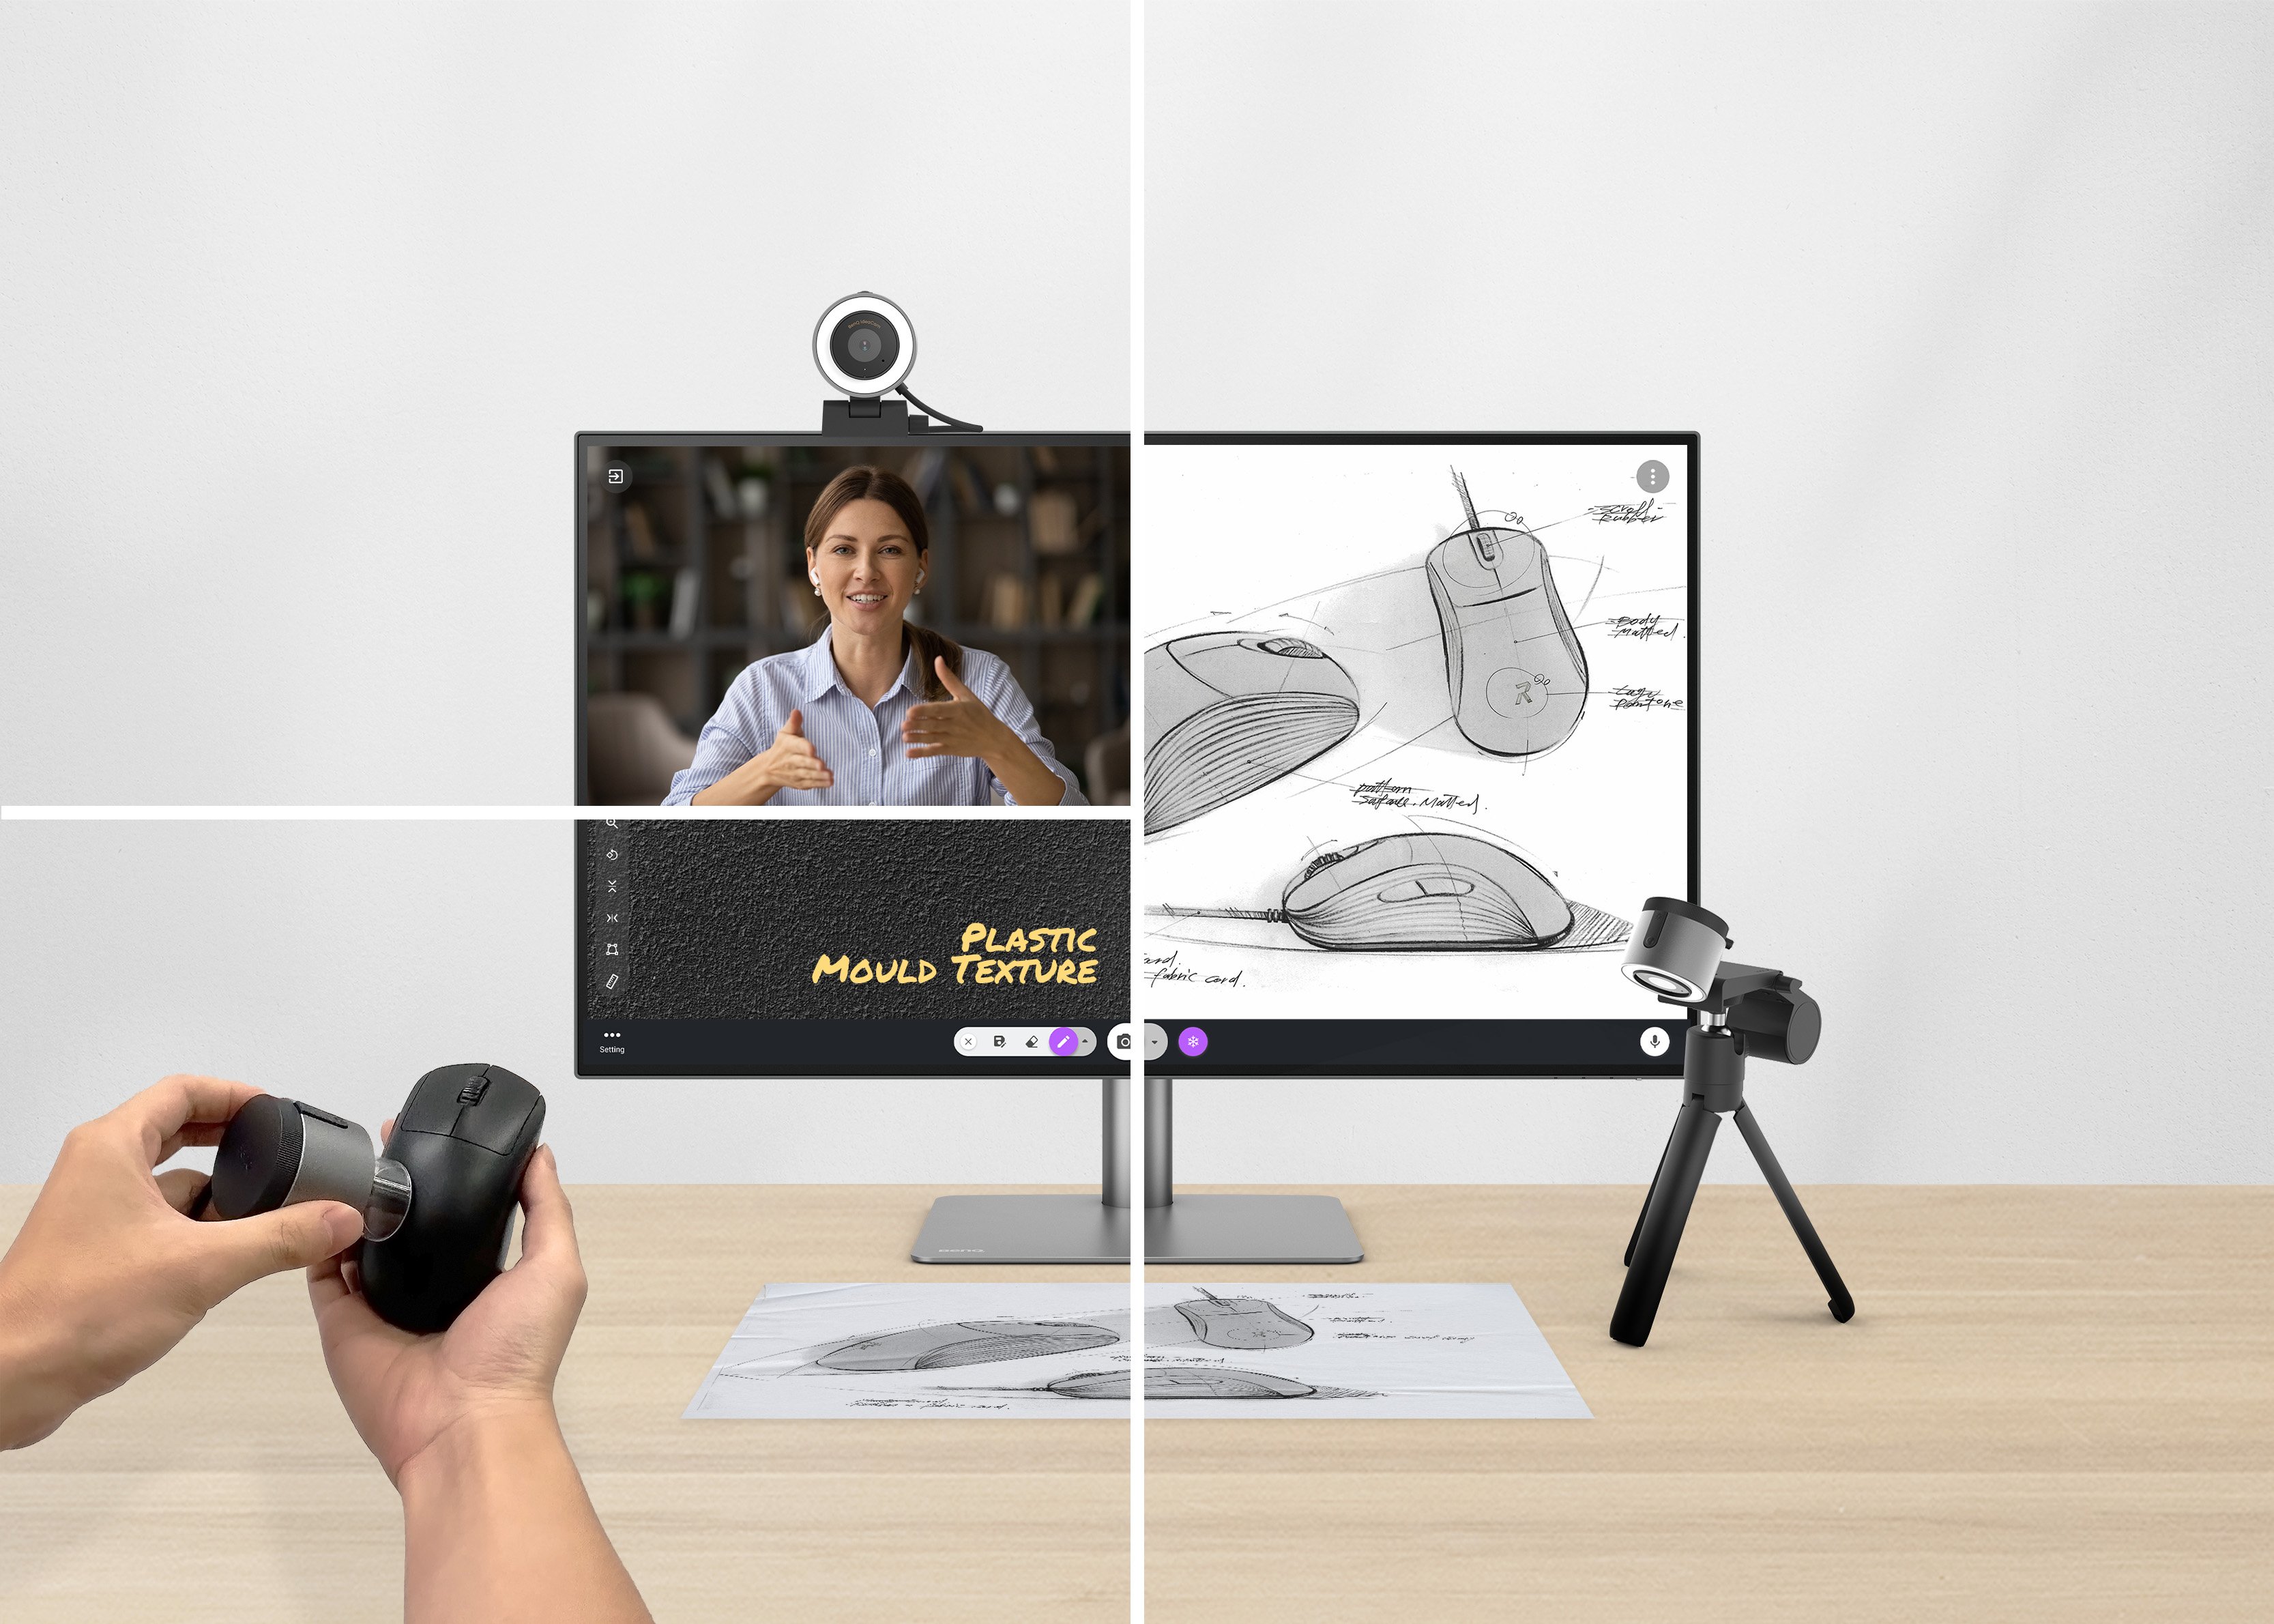 BenQ ideacam, an all-in-one webcam